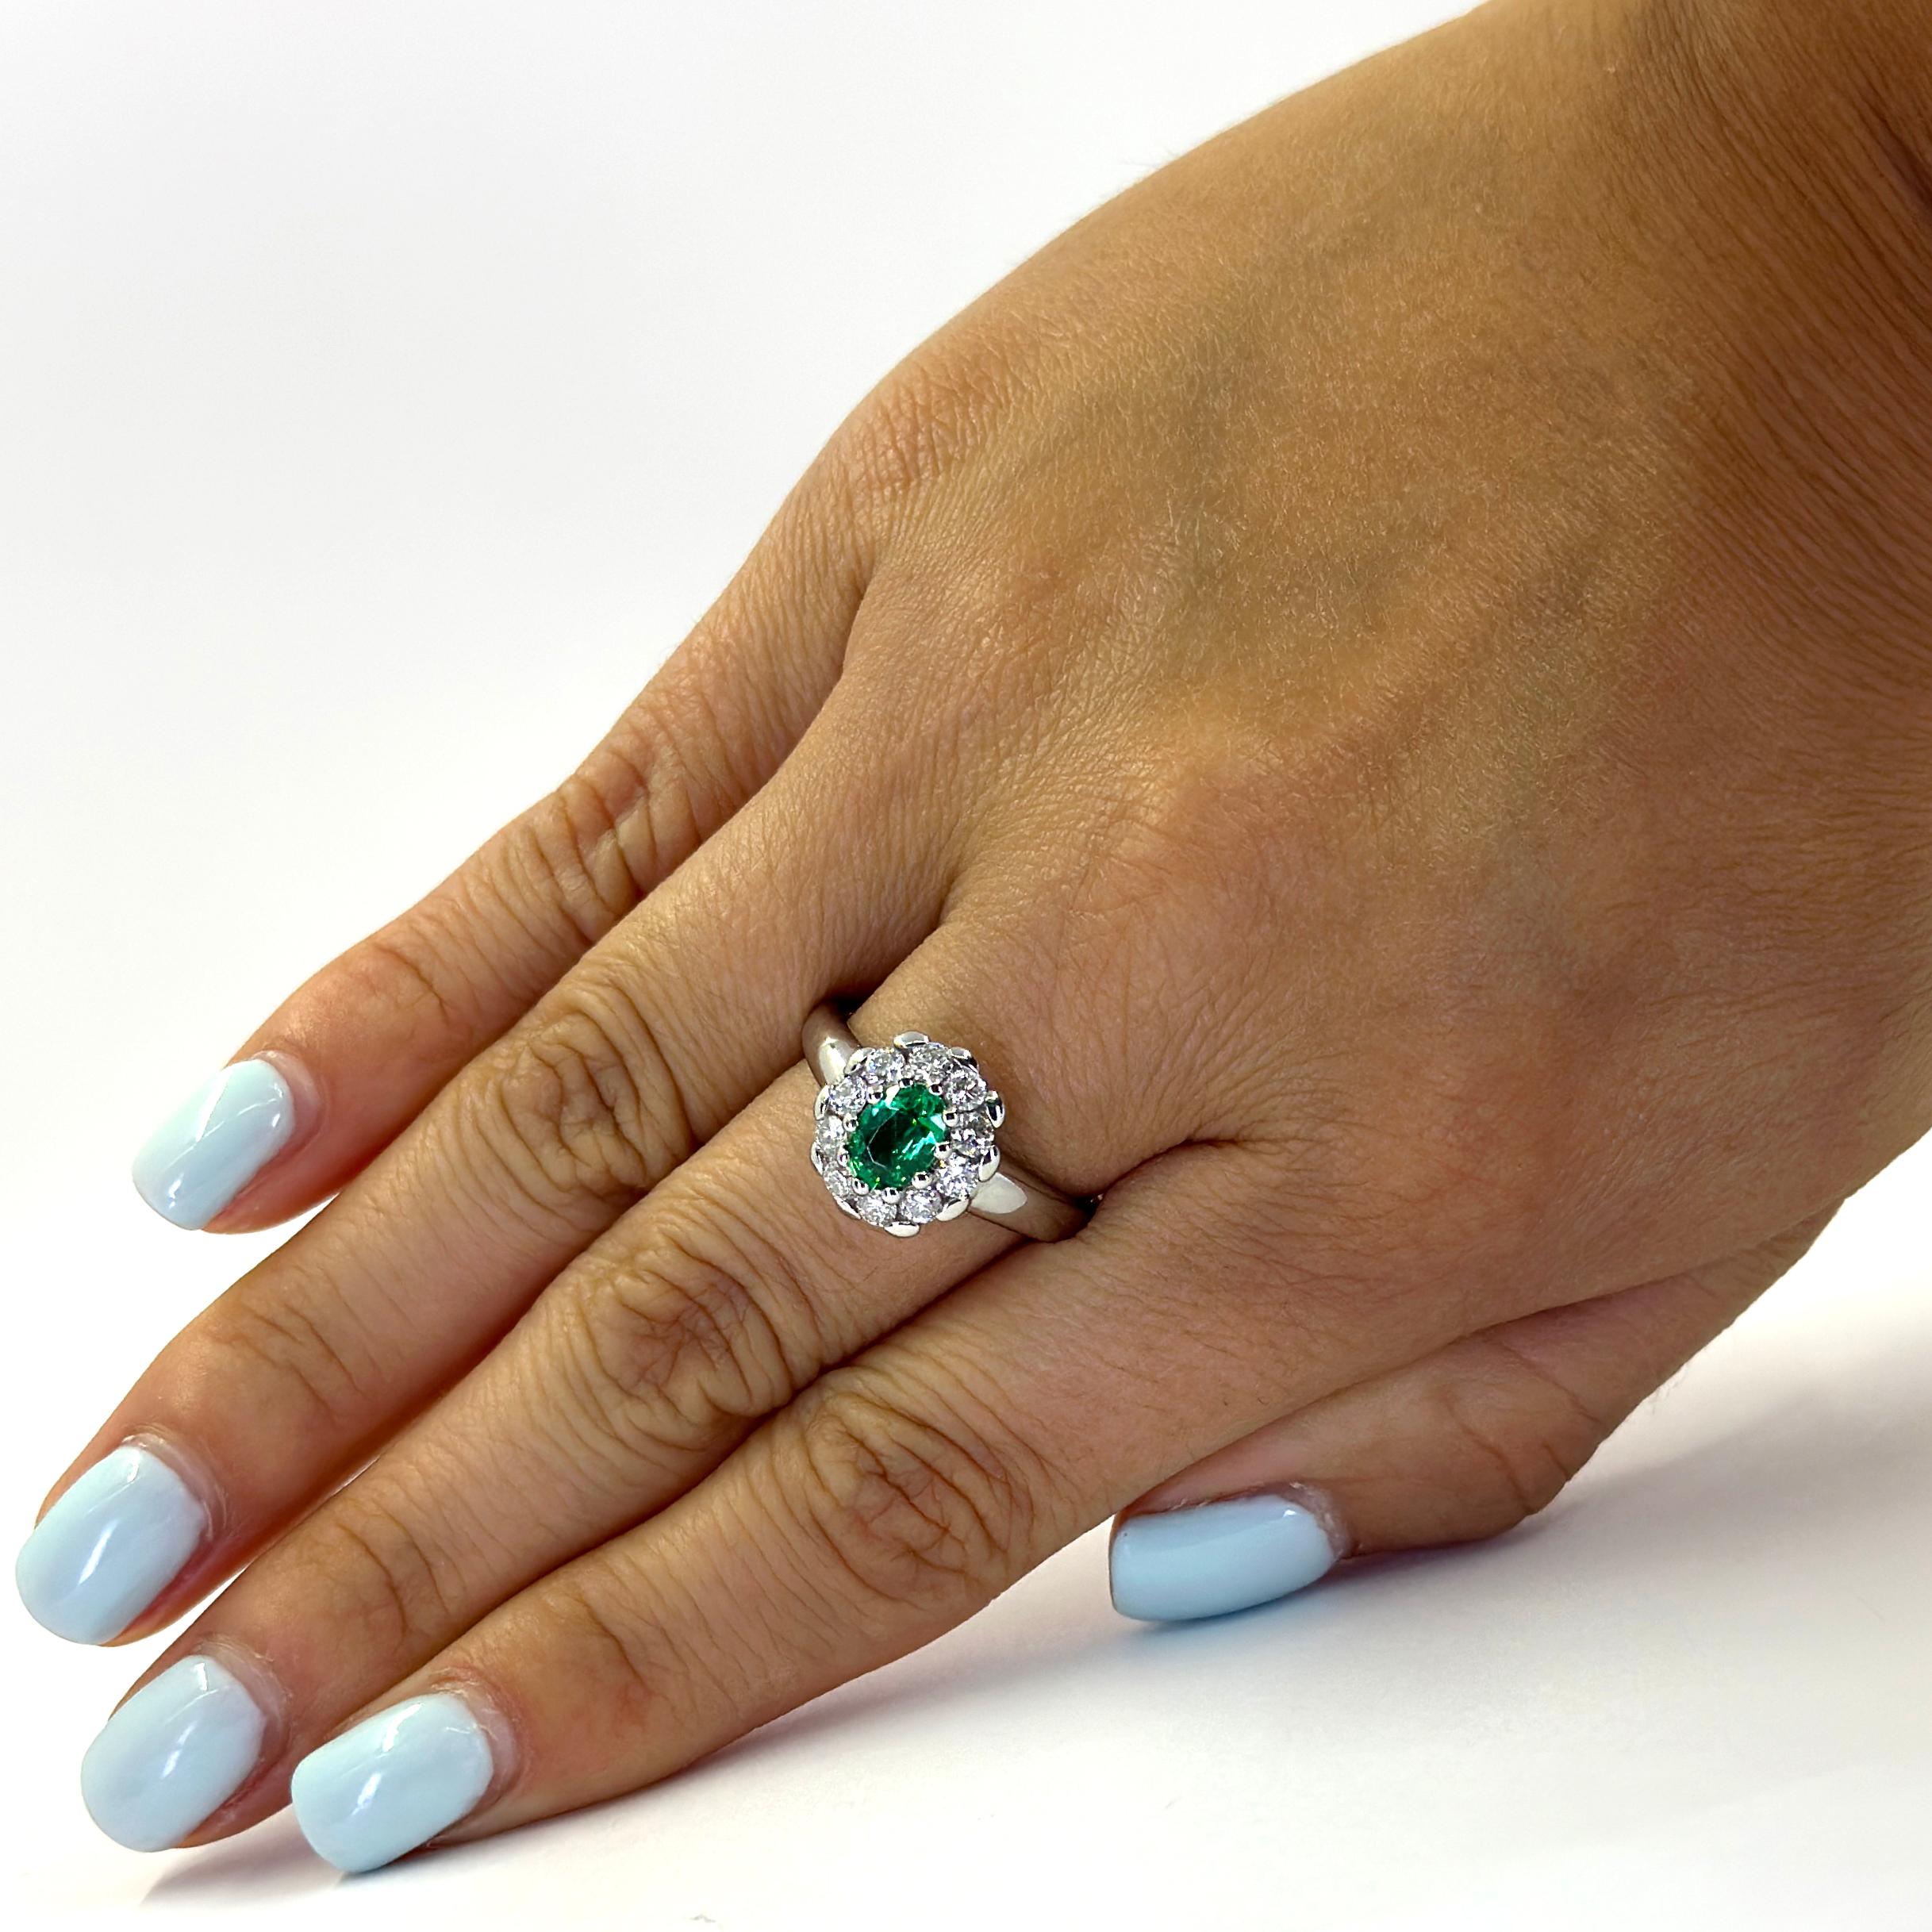 18 Karat Weißgold Ring mit einem Prong Set Oval Smaragd mit einem Gewicht von ca. 0,70 Karat akzentuiert durch 10 Prong Set Diamanten von VS Reinheit und G Farbe insgesamt ca. 0,60 Karat. Fingergröße 8.5; Der Kauf beinhaltet einen Größenservice auf